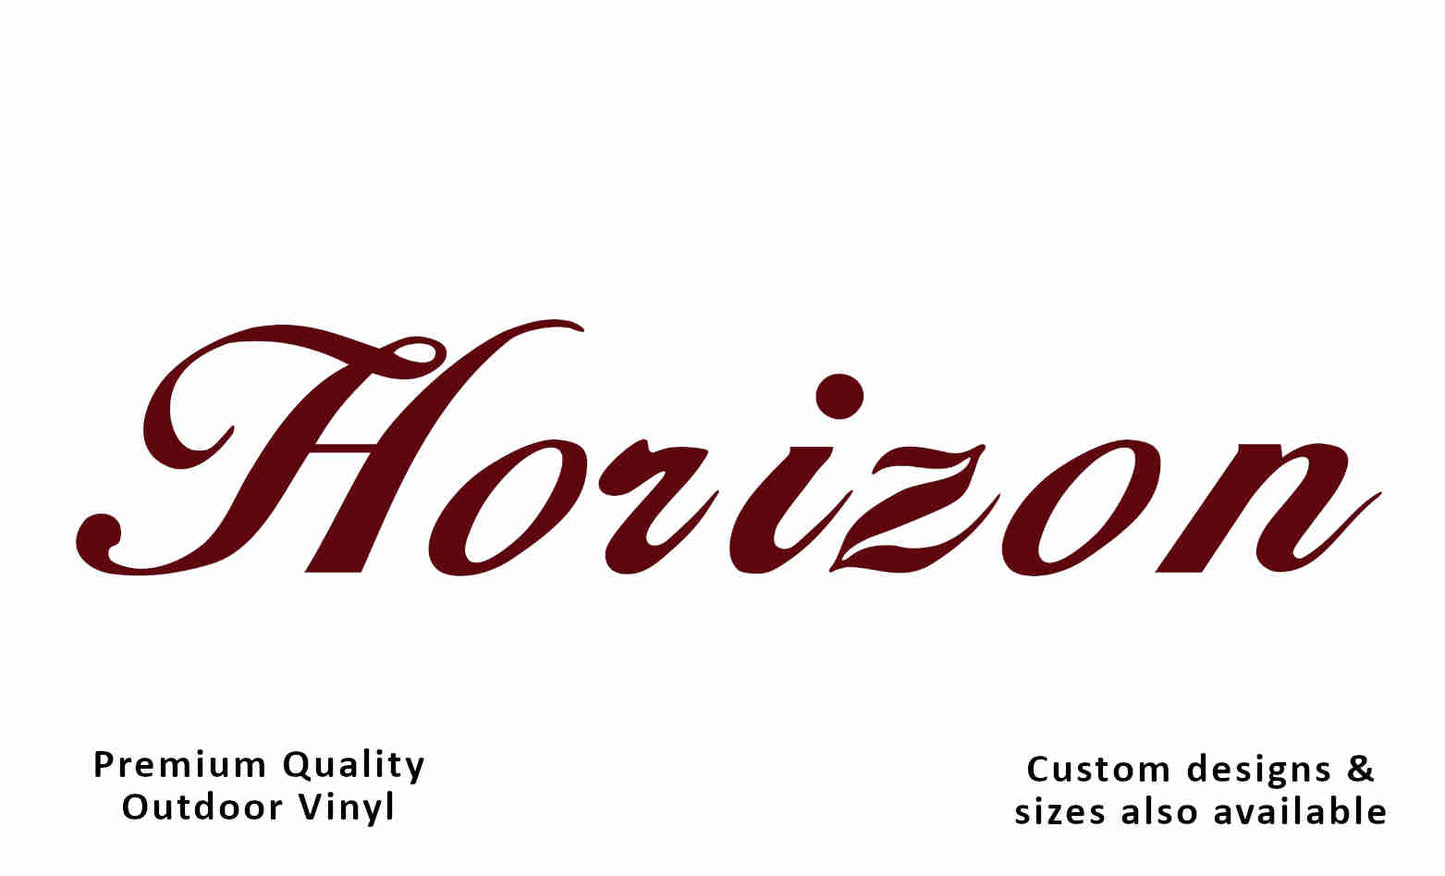 Millard horizon 2006-2008 caravan vinyl replacement decal sticker in dark red.